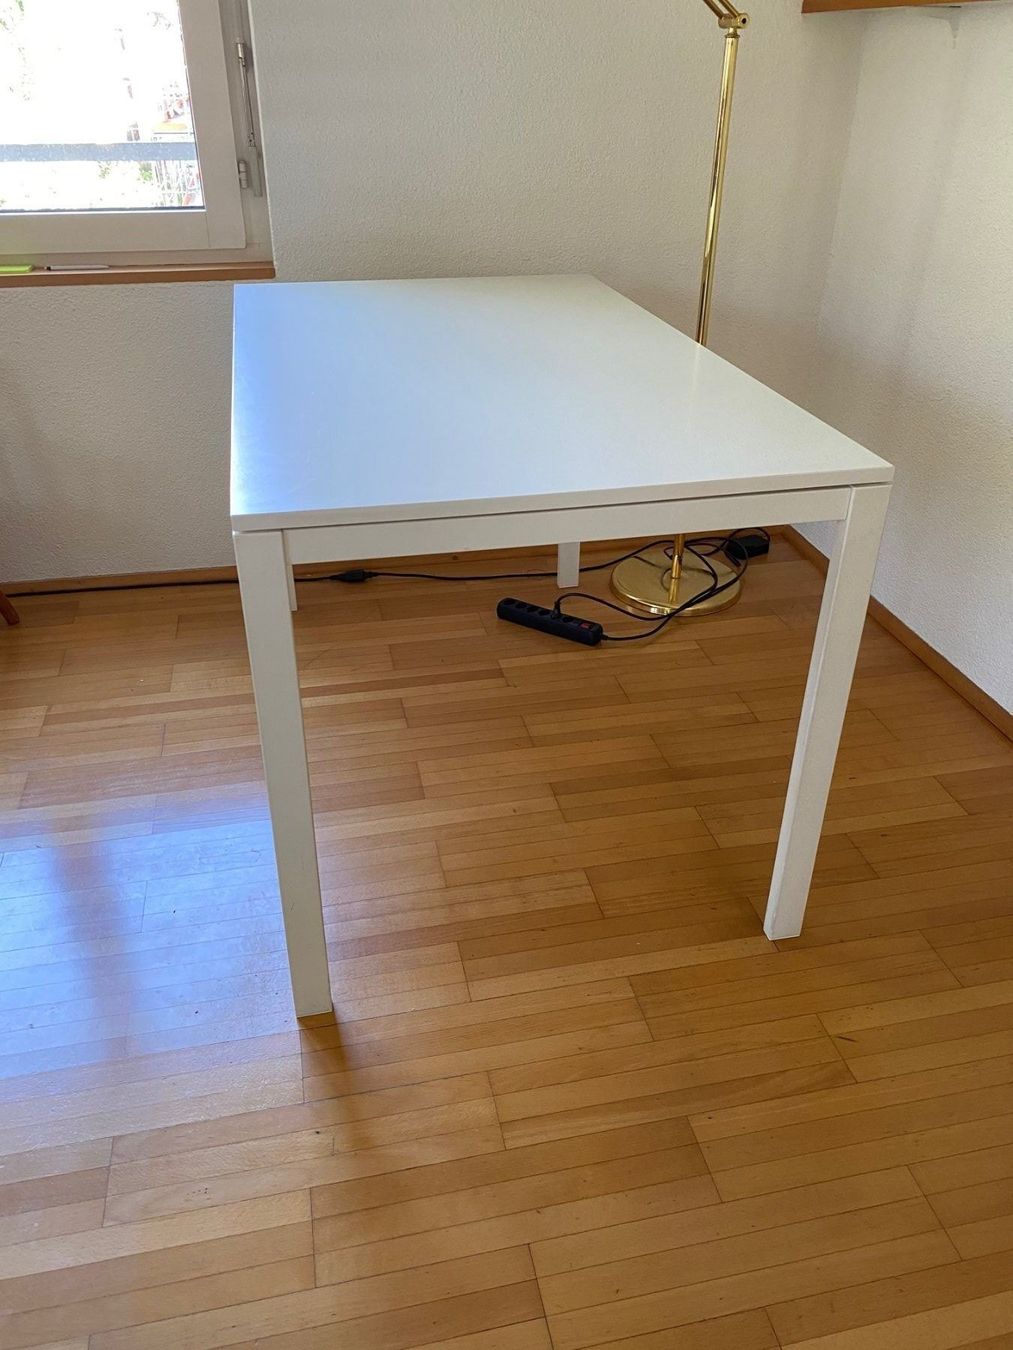 Tisch Ikea Melltorp weiss kaufen auf Ricardo